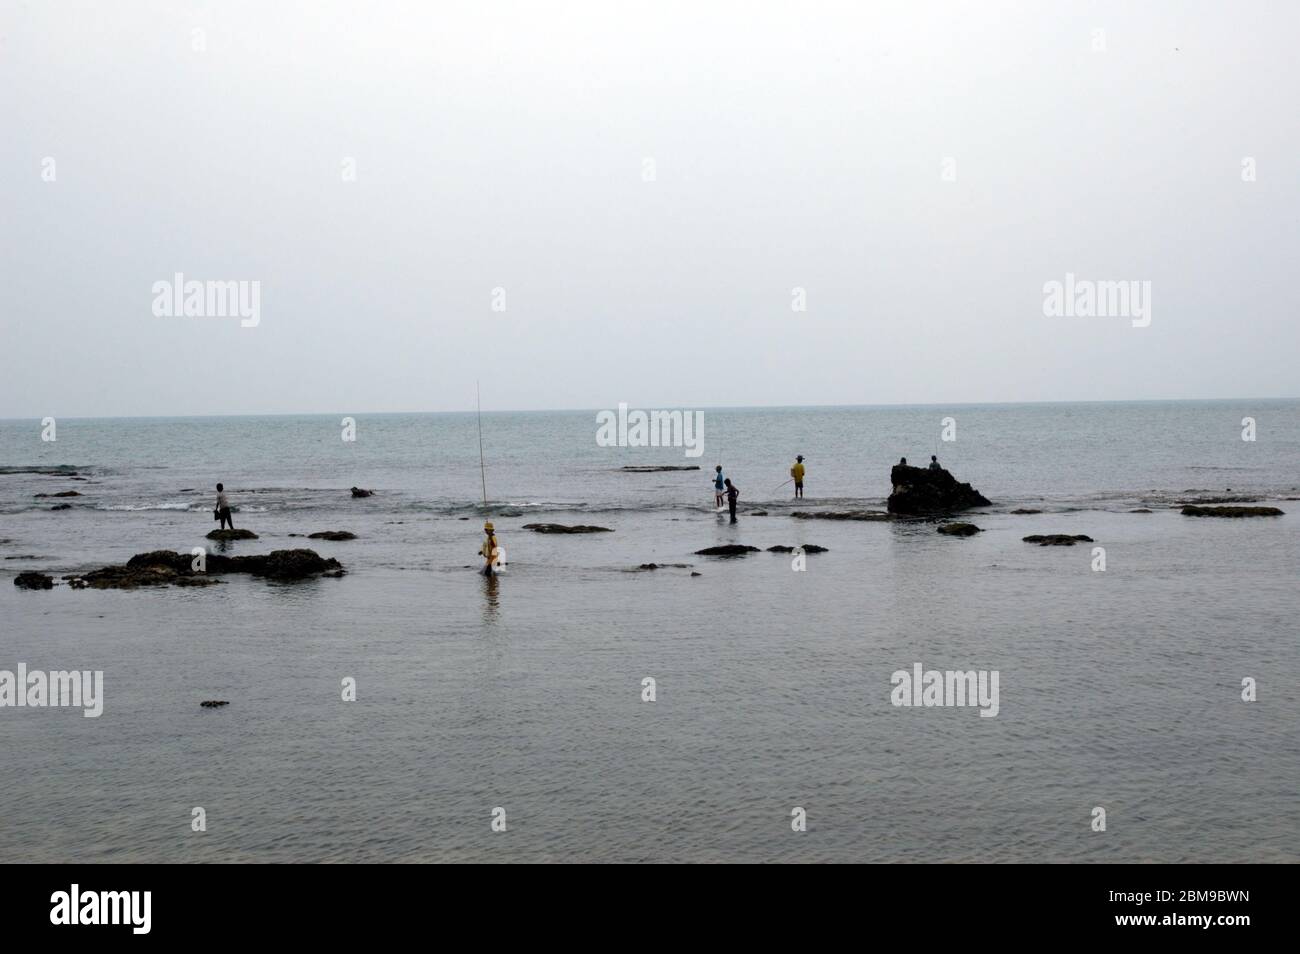 Uomini che pescano sulla zona costiera rocciosa vicino al Faro di Cikoneng ad Anyer, una città costiera di fronte allo stretto di Sunda nella provincia di Banten, Indonesia. Foto di archivio. Foto Stock